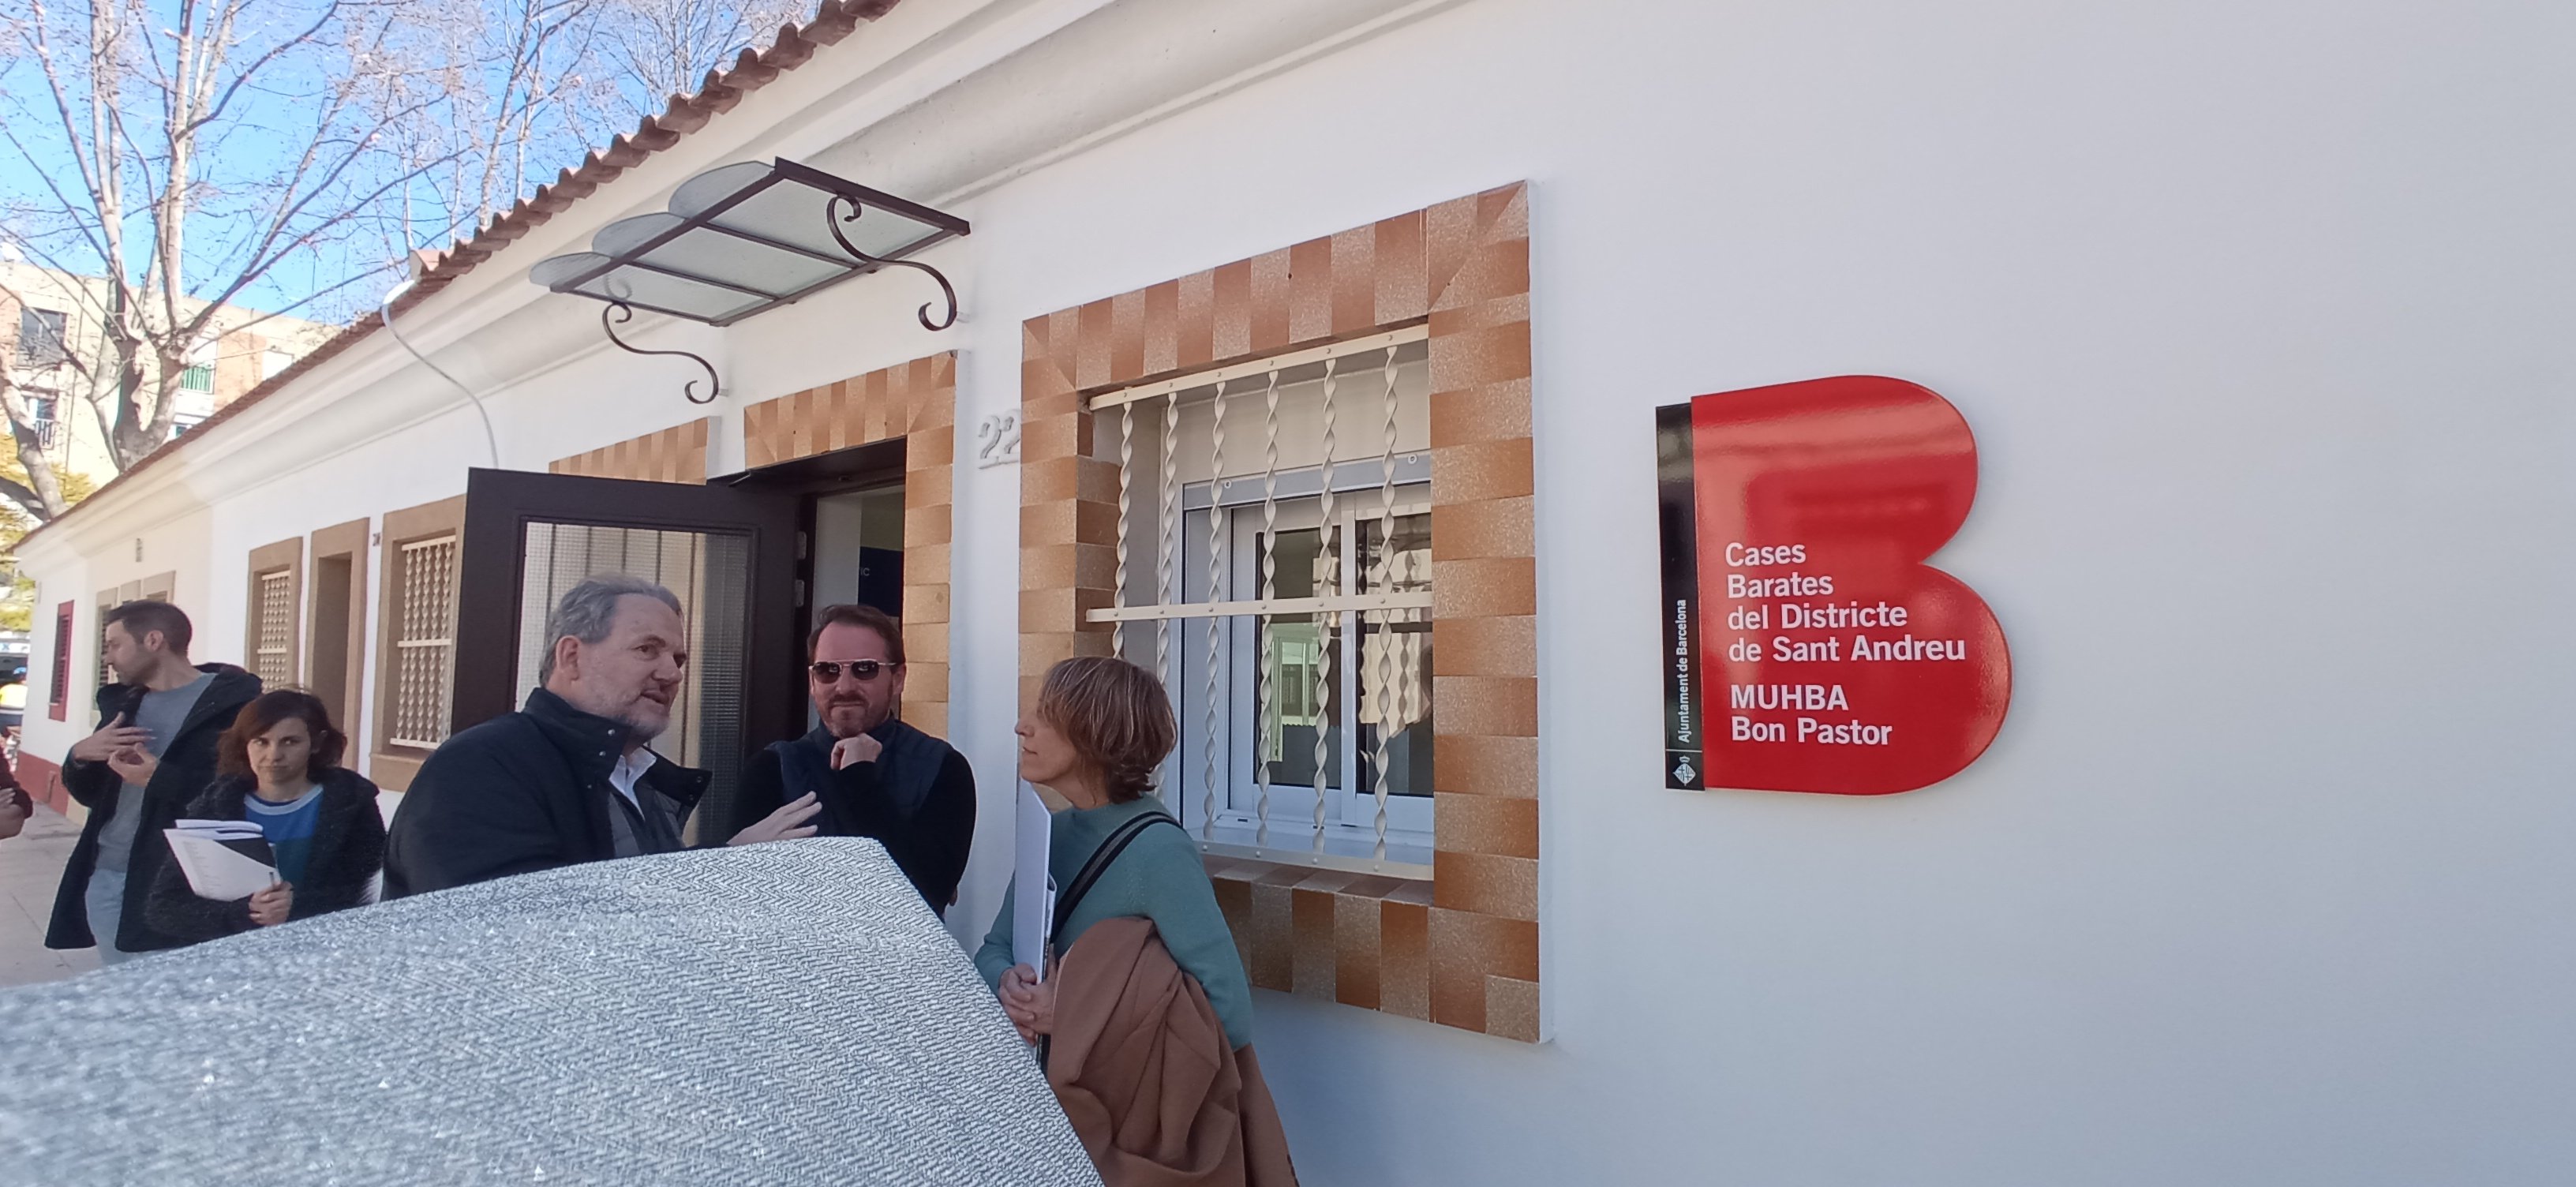 El museu de les Cases Barates del Bon Pastor, o com explicar Barcelona des de la perifèria